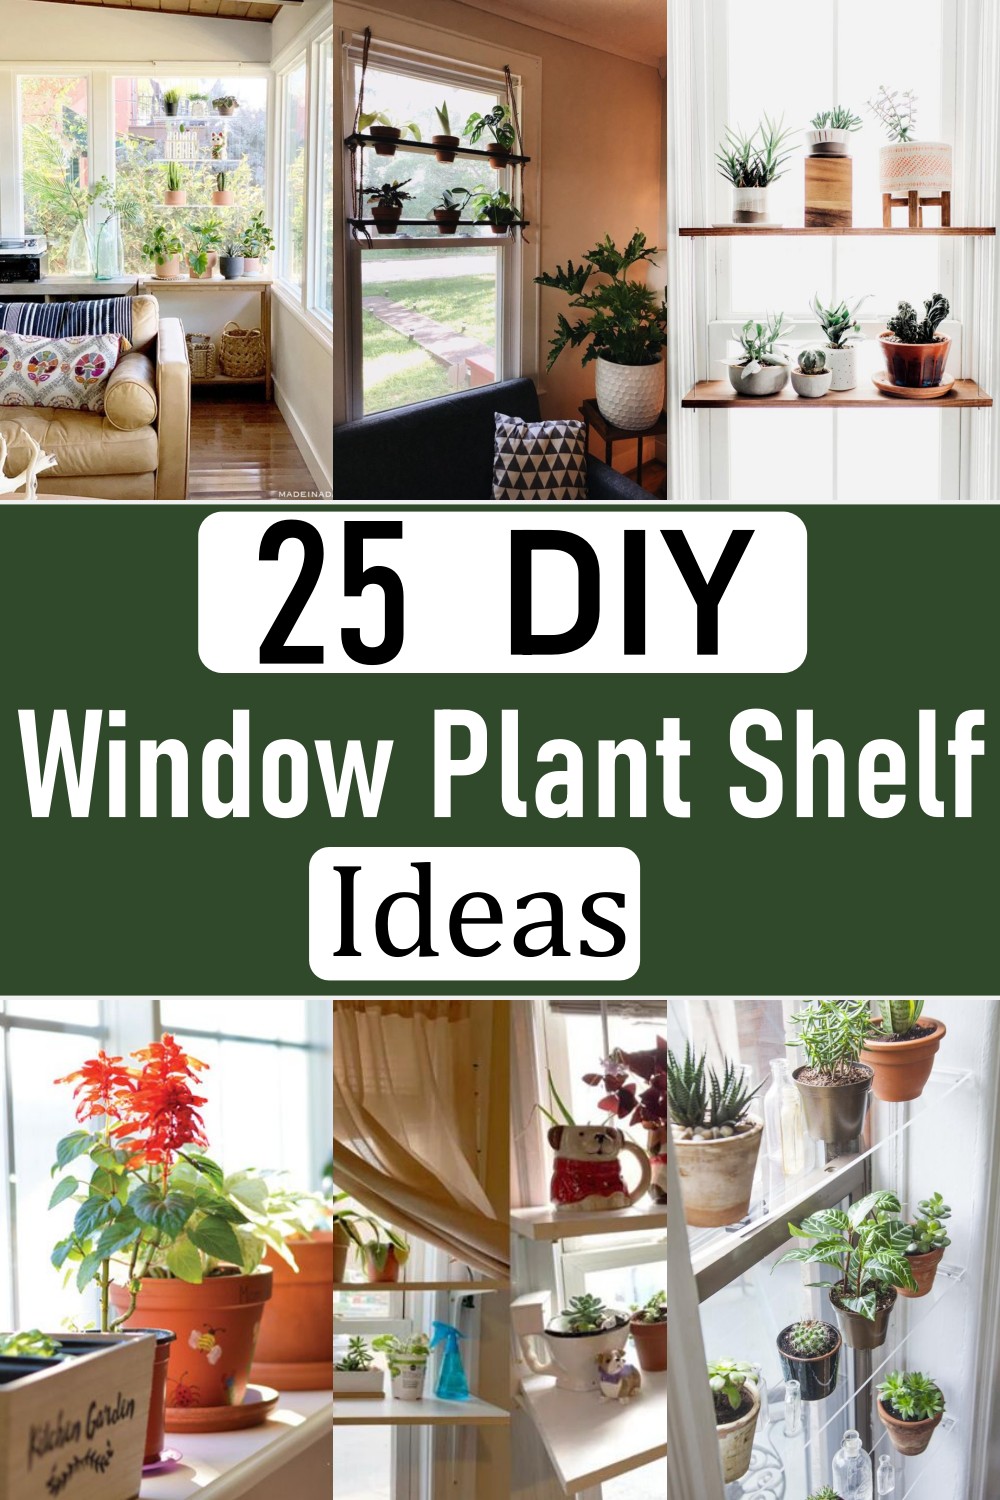  Window Plant Shelf: